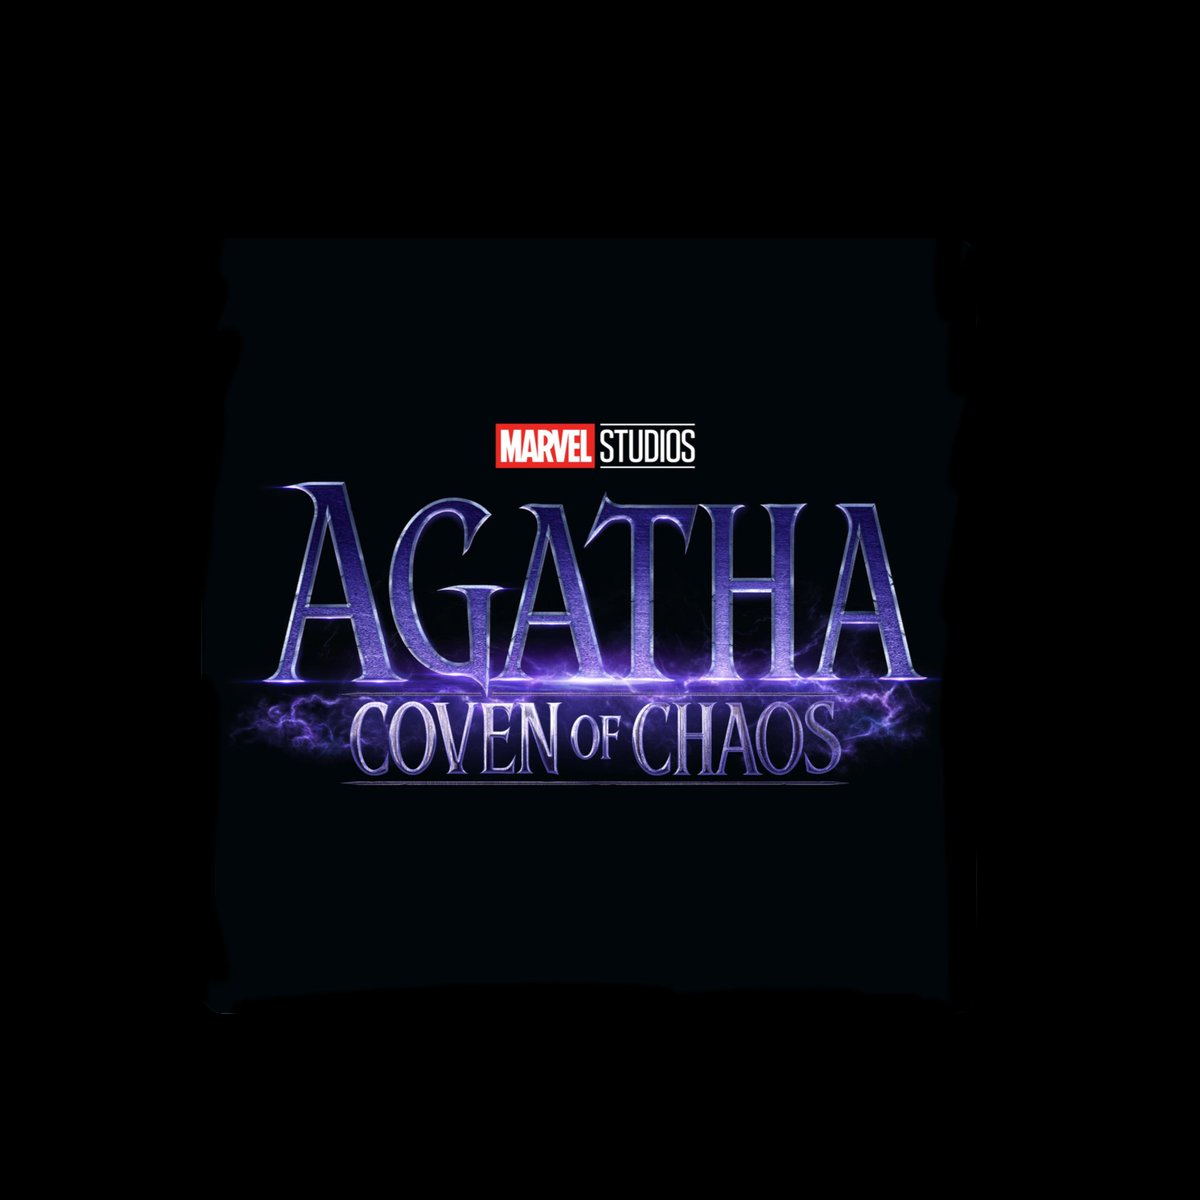 Le tournage de la série Marvel 'Agatha: Coven of Chaos' est terminé.🎬